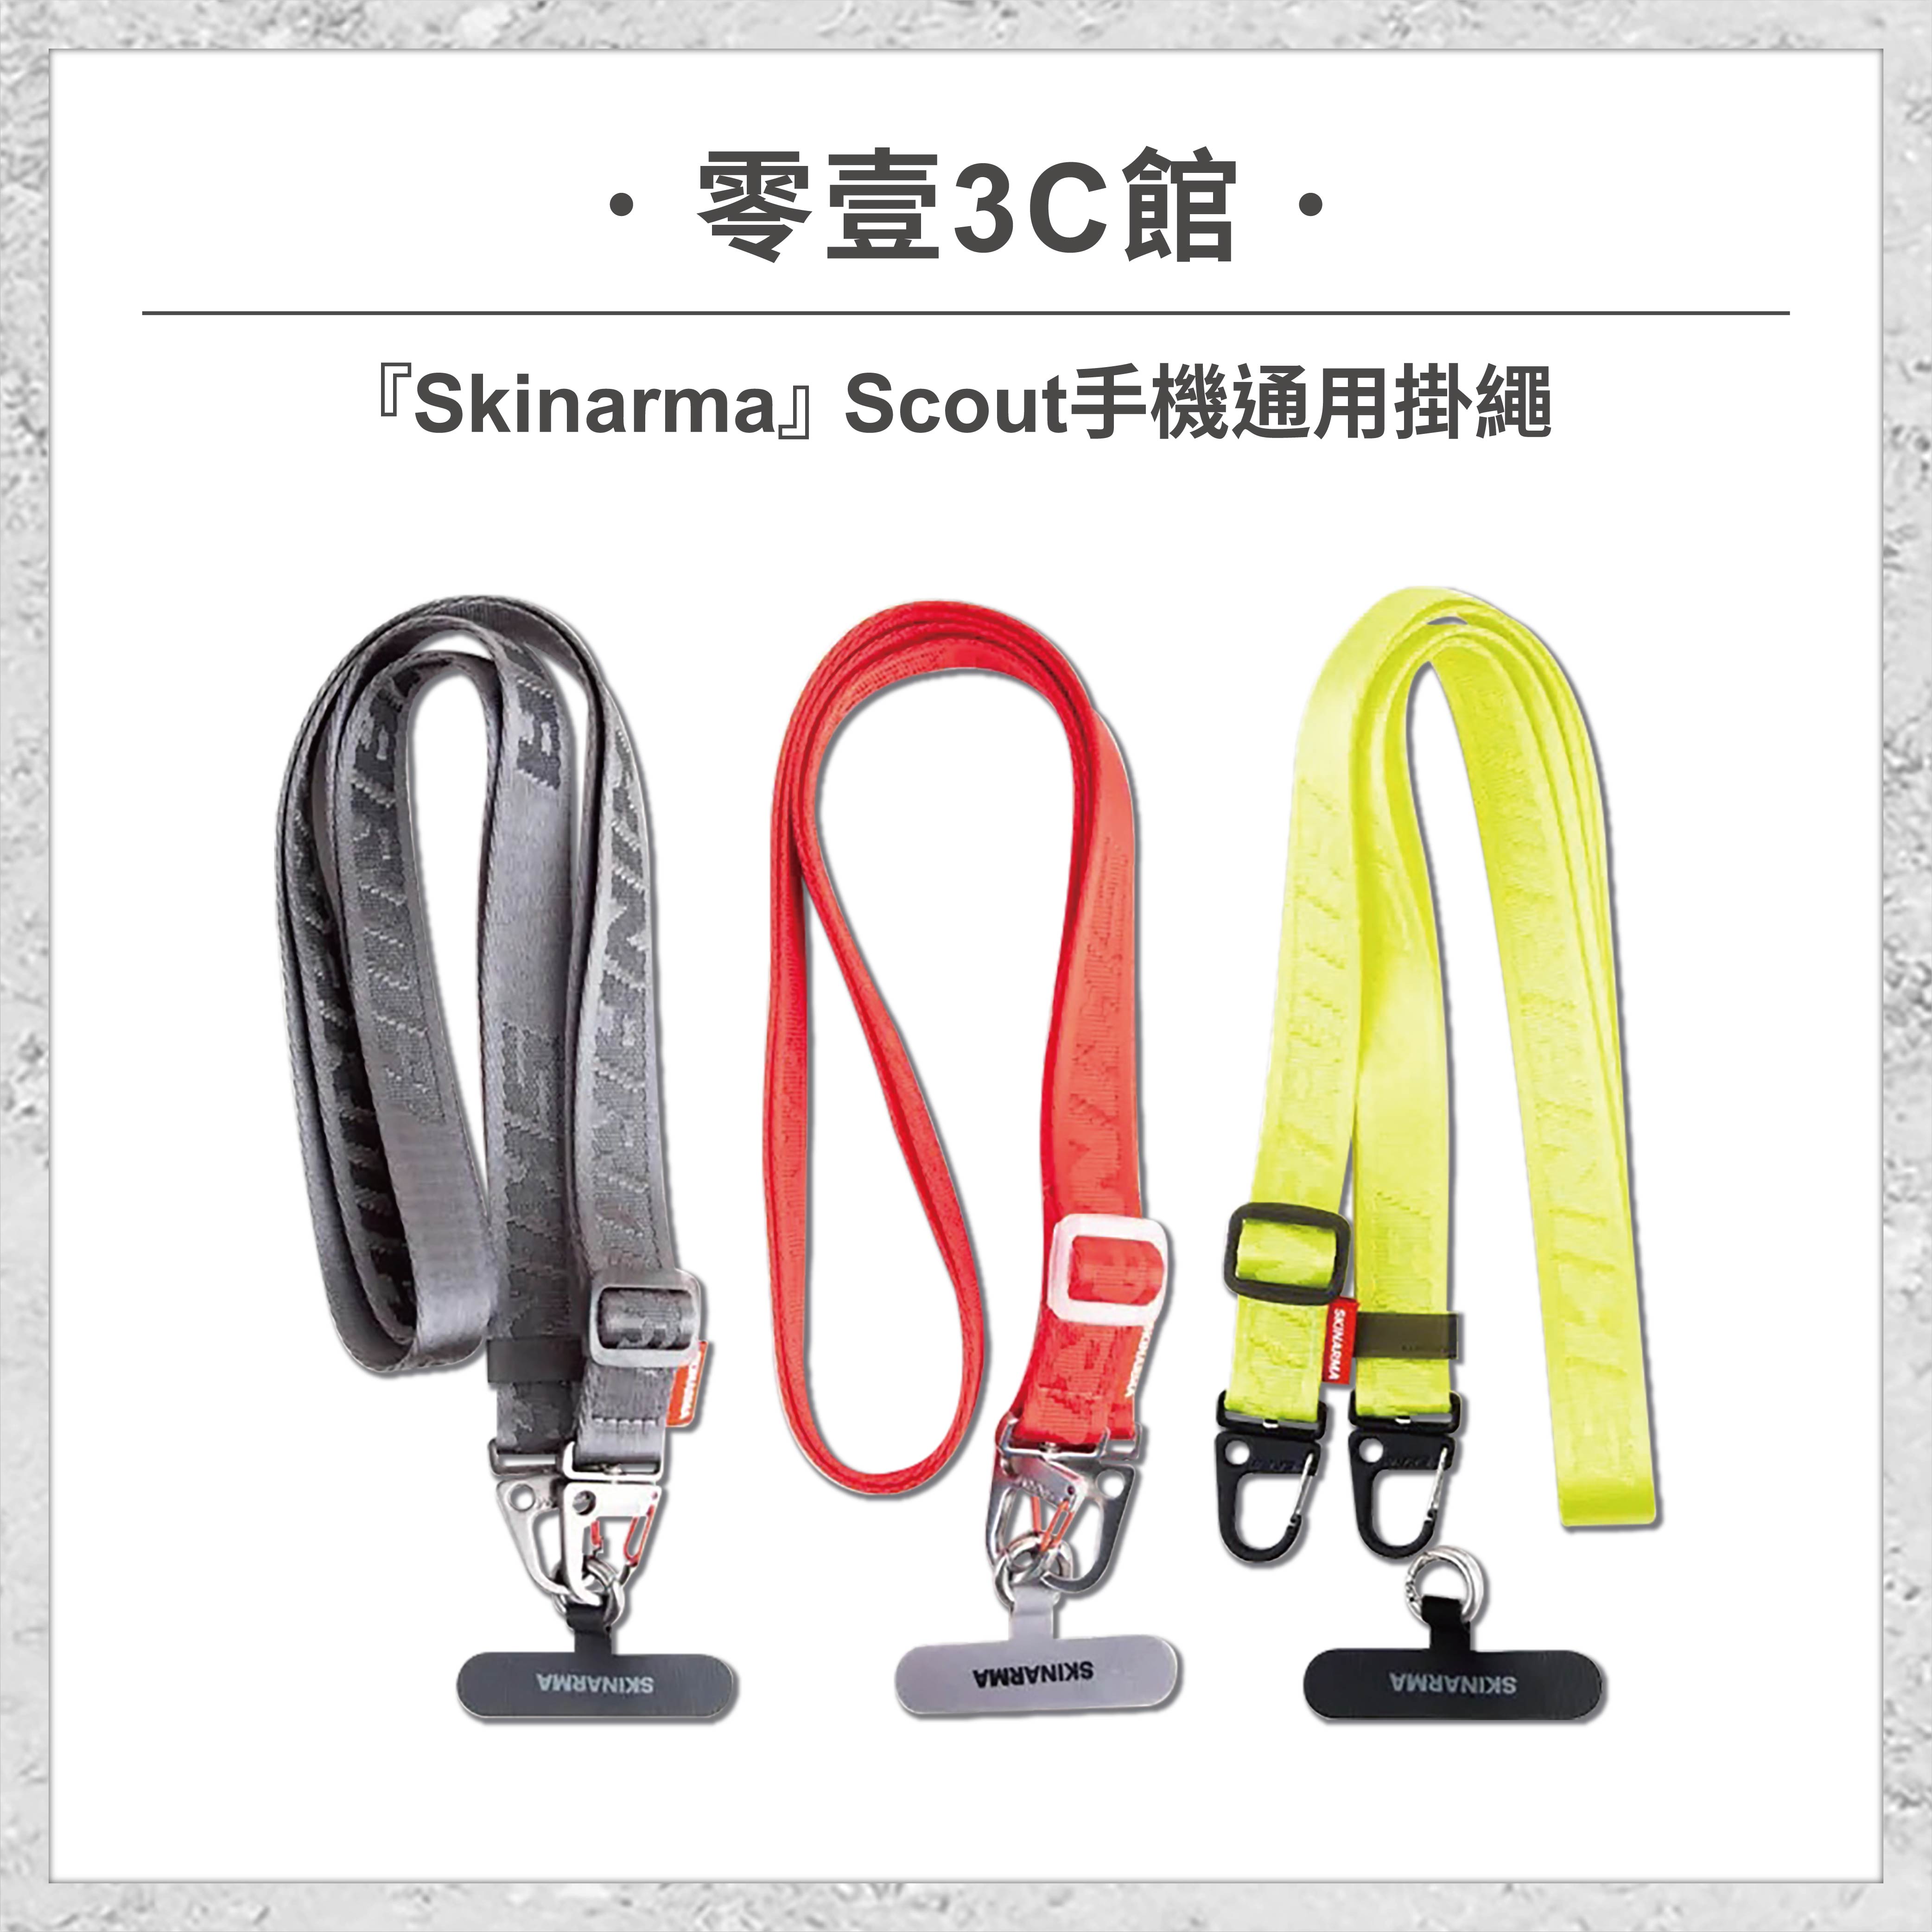 『Skinarma』Scout 手機通用掛繩 手機掛繩 手機背帶 頸掛繩(附掛繩通用墊片)